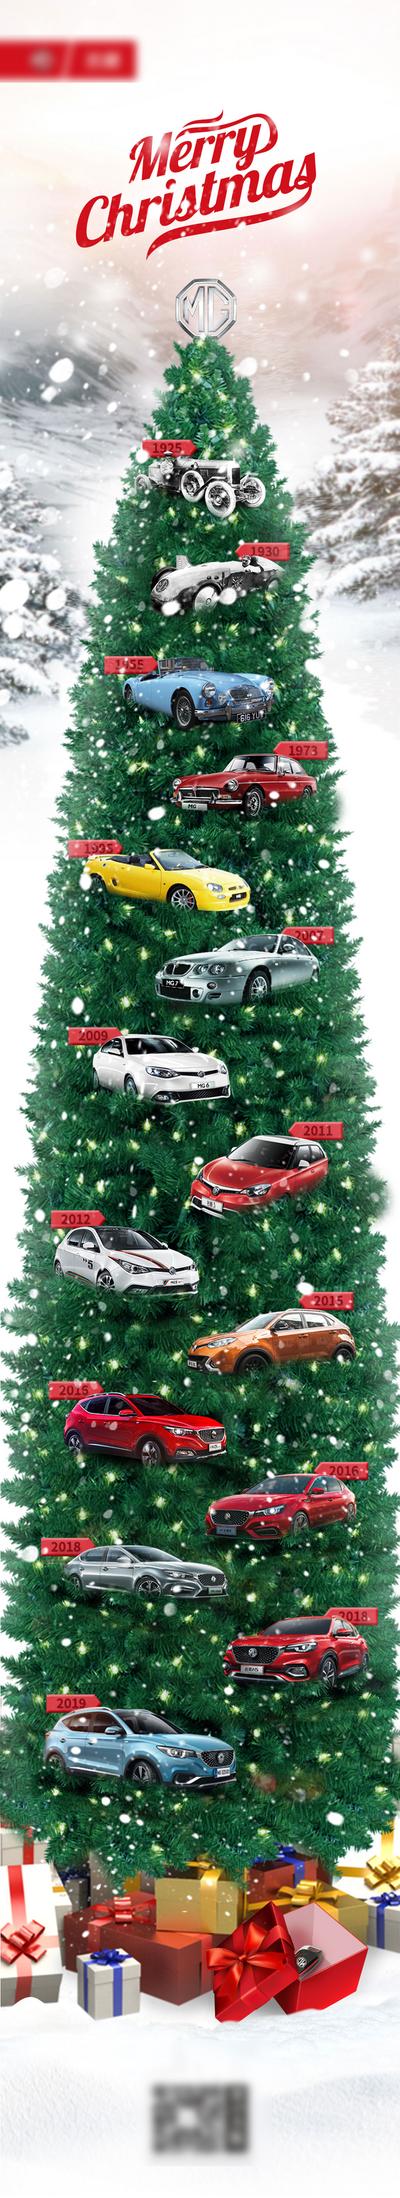 南门网 海报 长图 公历节日 圣诞节 汽车 圣诞树 车型 活动